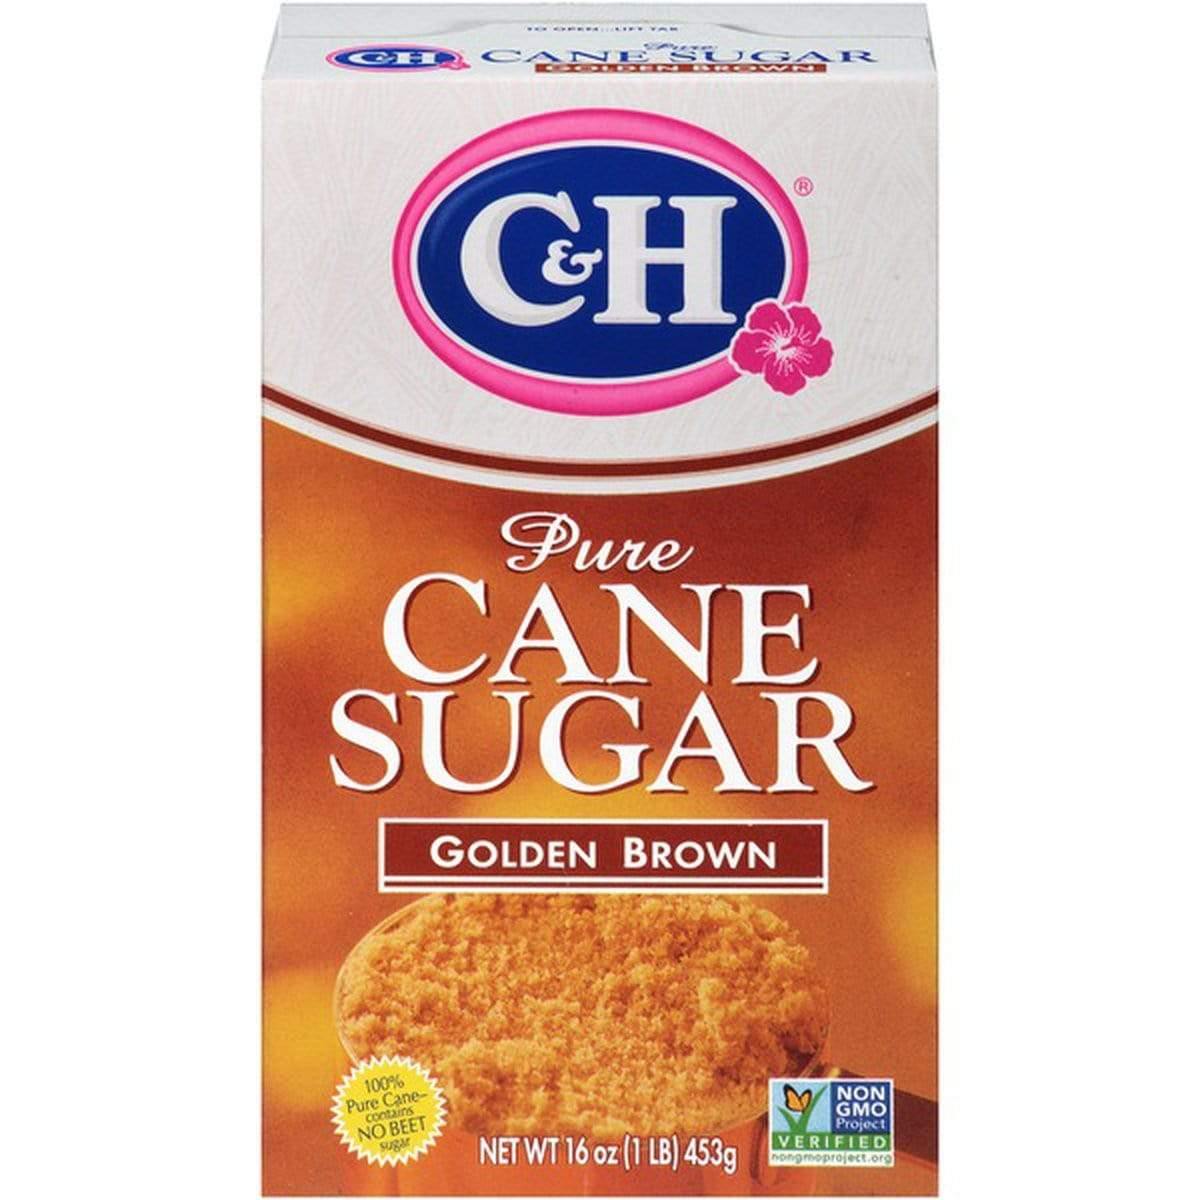 C&h Pure Cane Golden Brown Sugar - Freshkala